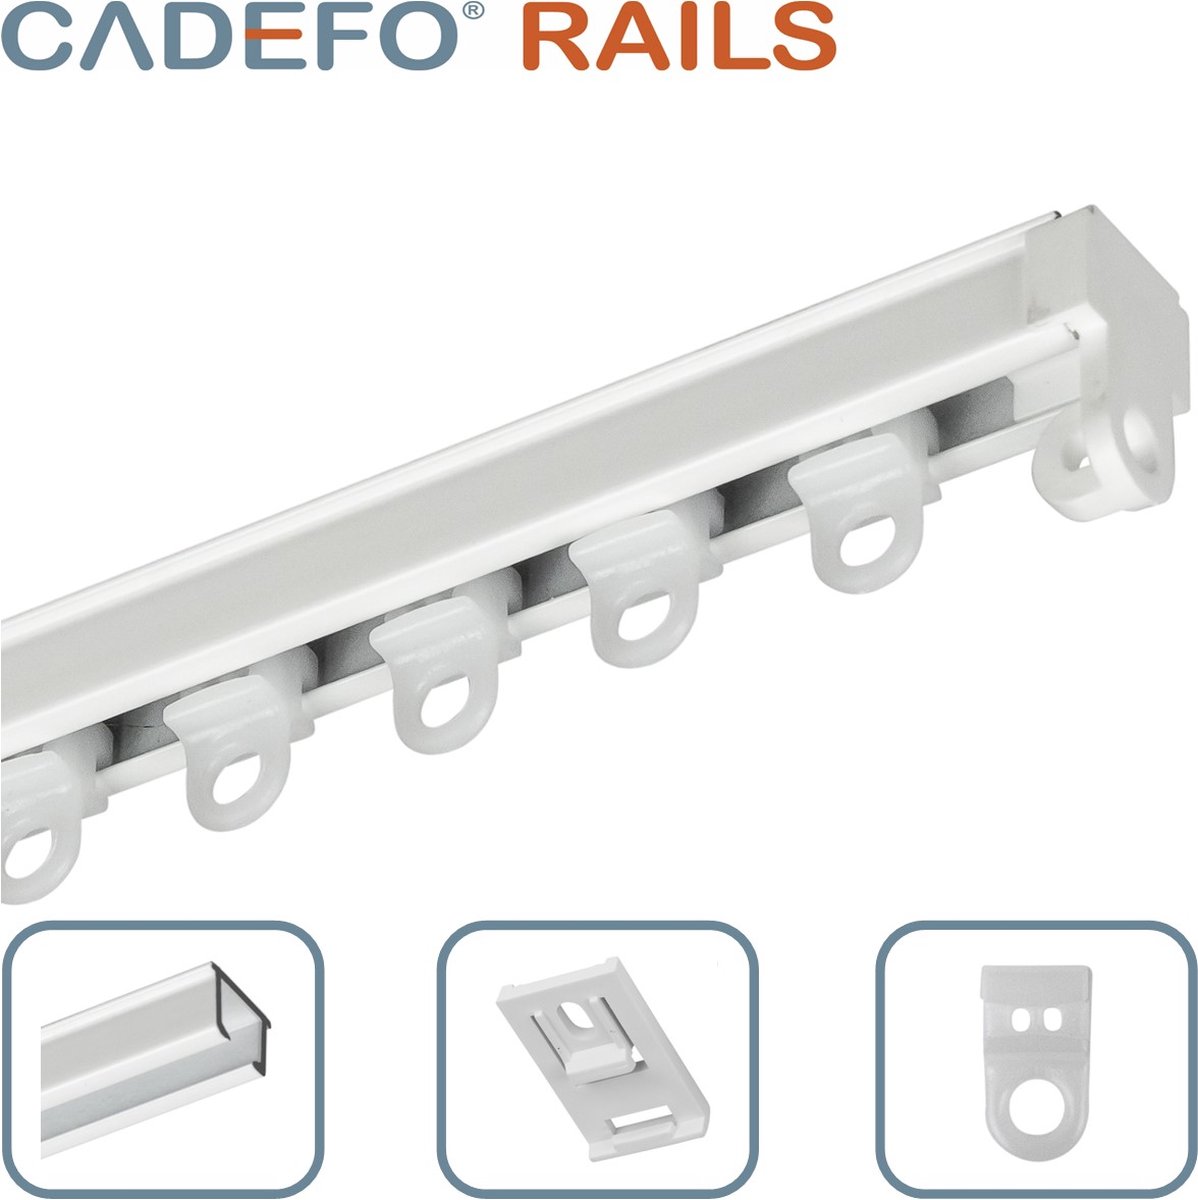 CADEFO RAILS (451 - 500 cm) Gordijnrails - Compleet op maat! - UIT 1 STUK - Leverbaar tot 6 meter - Plafondbevestiging - Lengte 476 cm